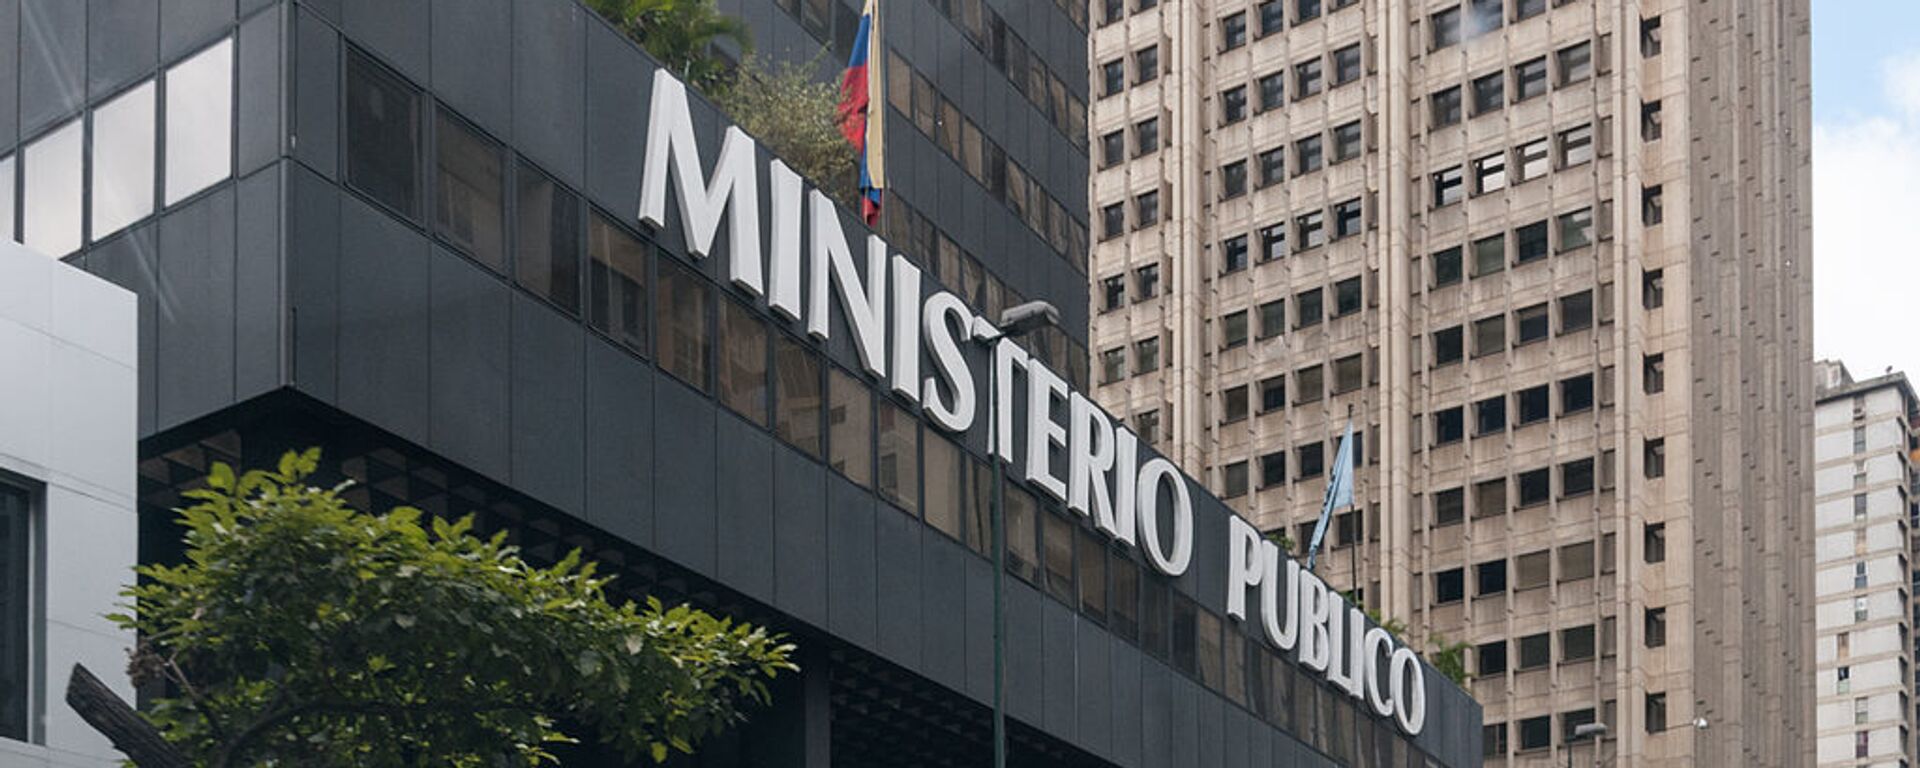 Ministerio Público (Fiscalía) de Venezuela - Sputnik Mundo, 1920, 04.11.2021